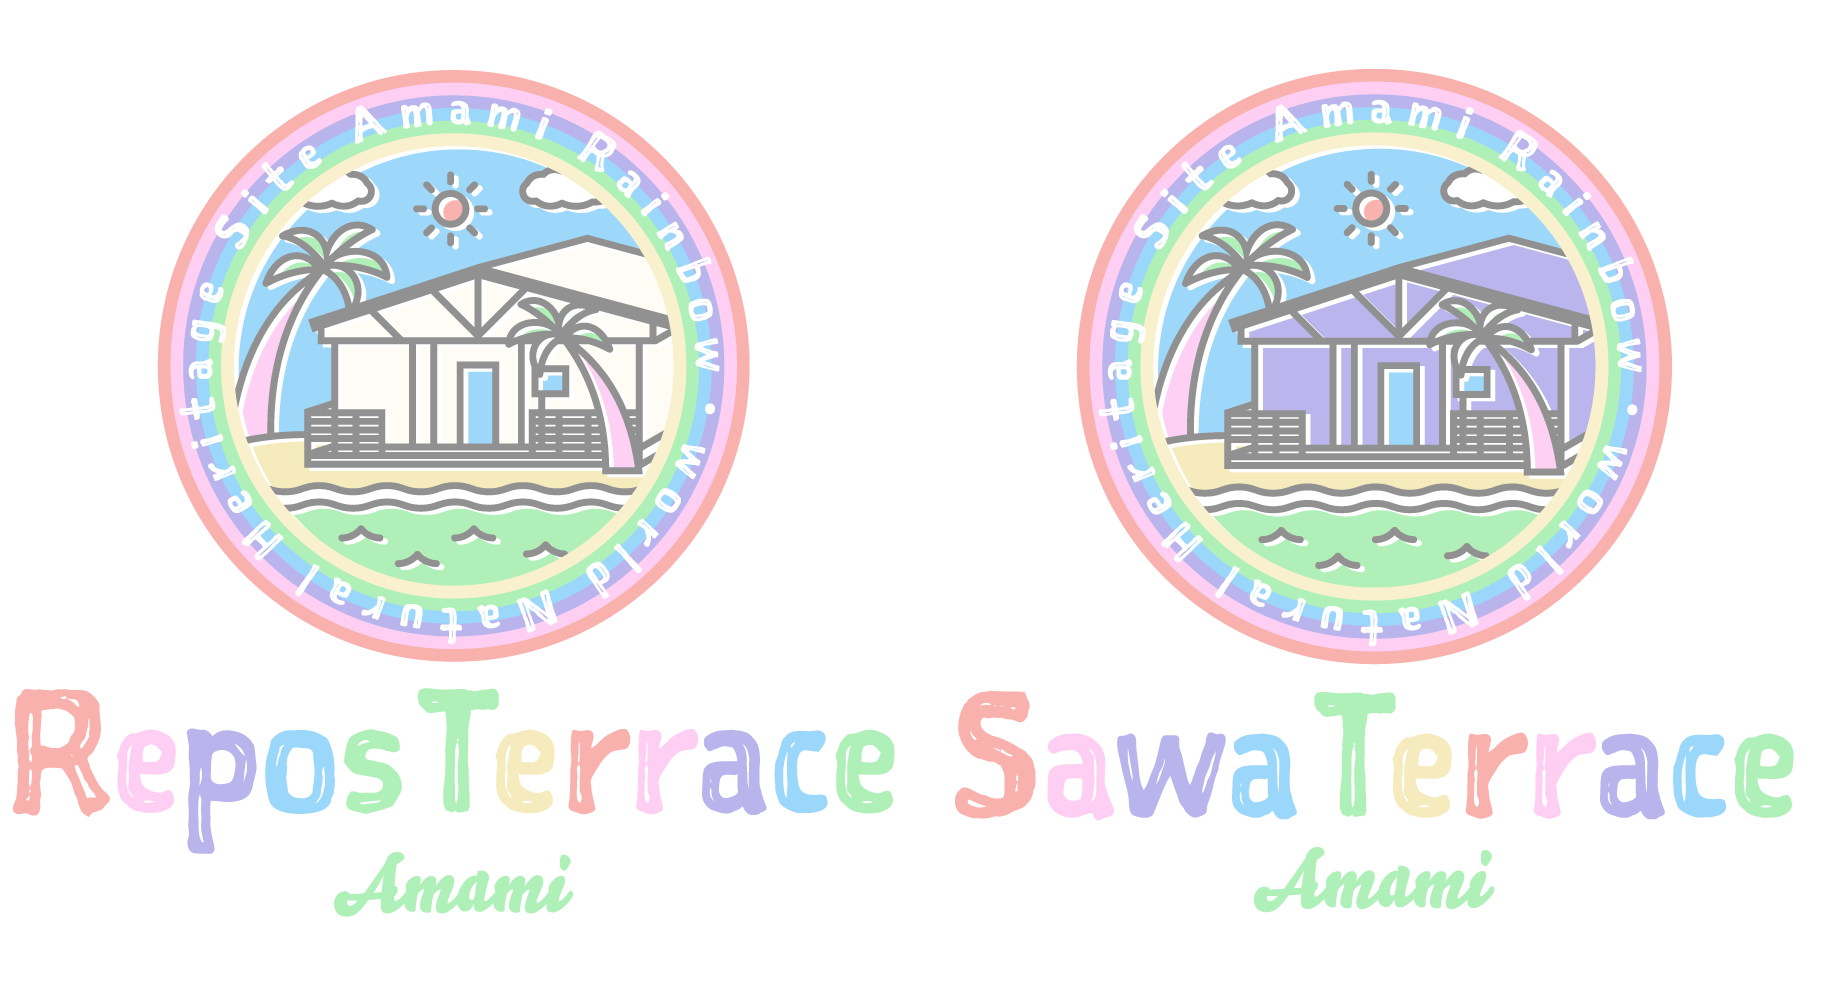 sawaterrace_and_reposterrace Terraceのギャラリーページ